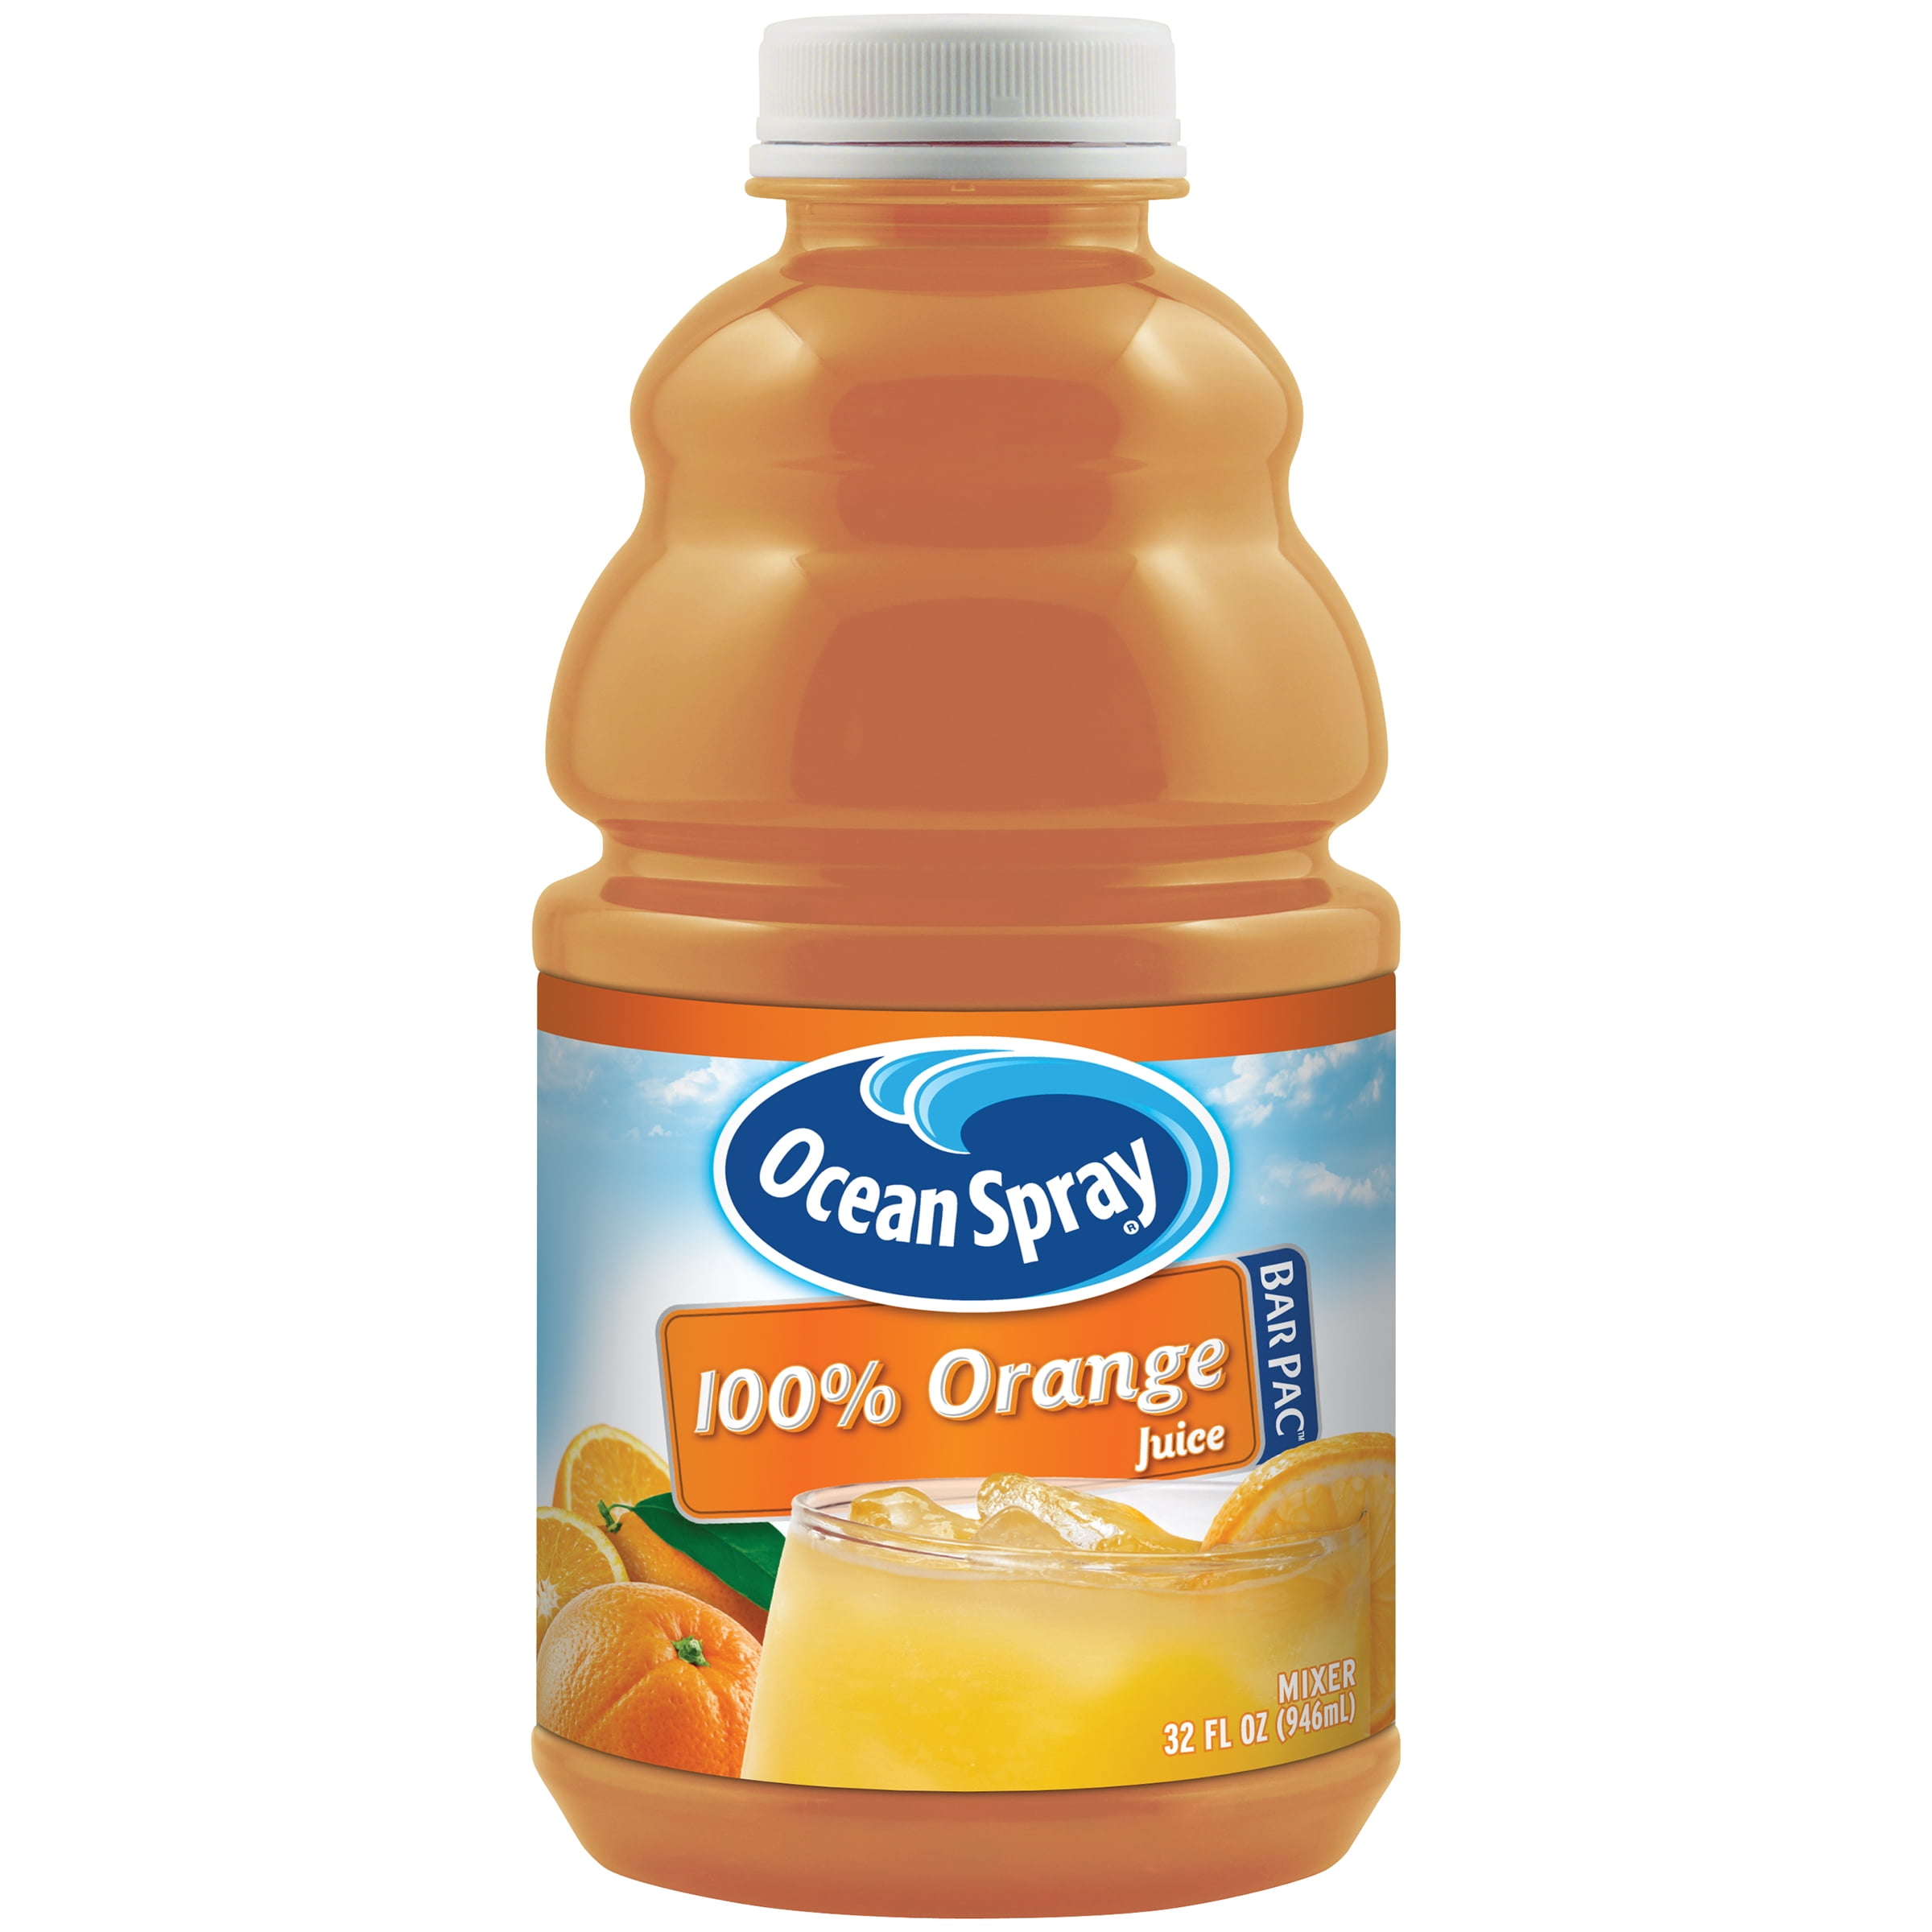 Ocean Spray 100 Orange Juice, 32 fl oz